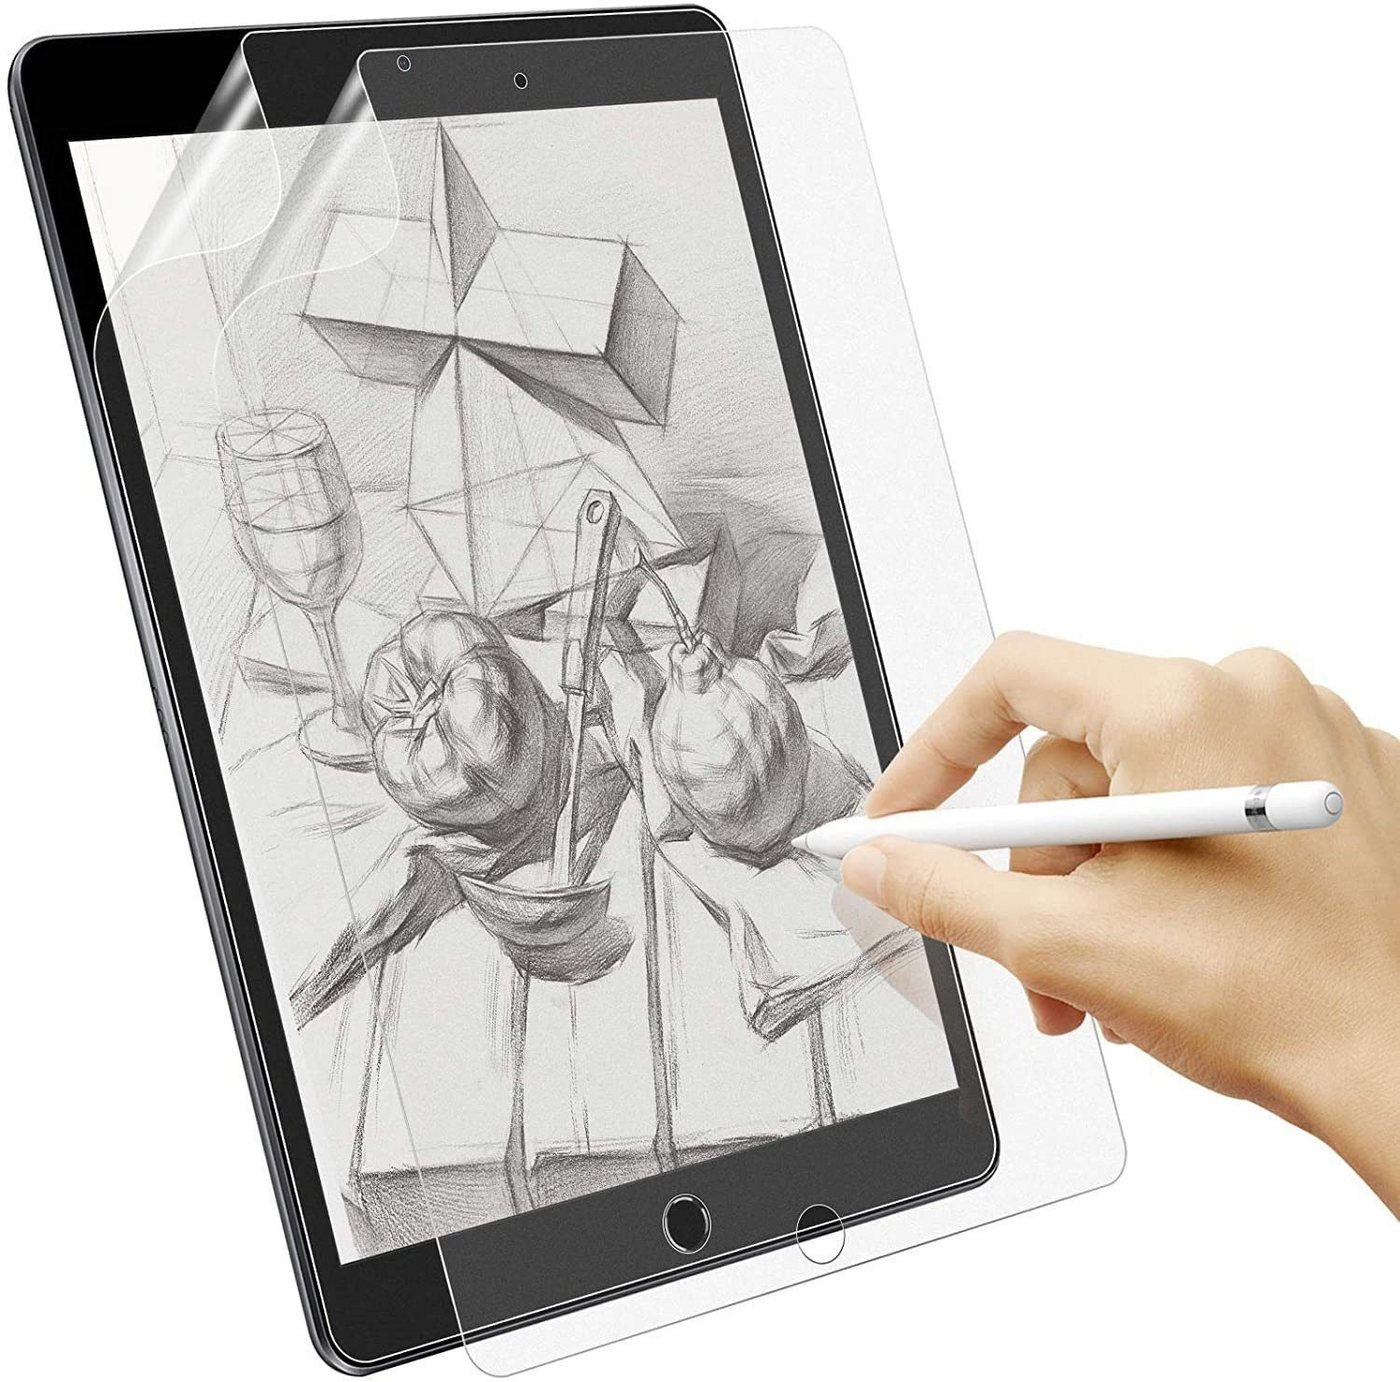 Mutoy Schutzfolie Matt Papier Folie für iPad 10,2 Zoll, 2 Stück Papier Schutzfolie, (für iPad 10,2 2021/2020/2019(iPad 9. / 8. / 7. Generation), Matte Folie Blendfreiem zum Zeichnen, Schreiben und Notizen Machen von Mutoy